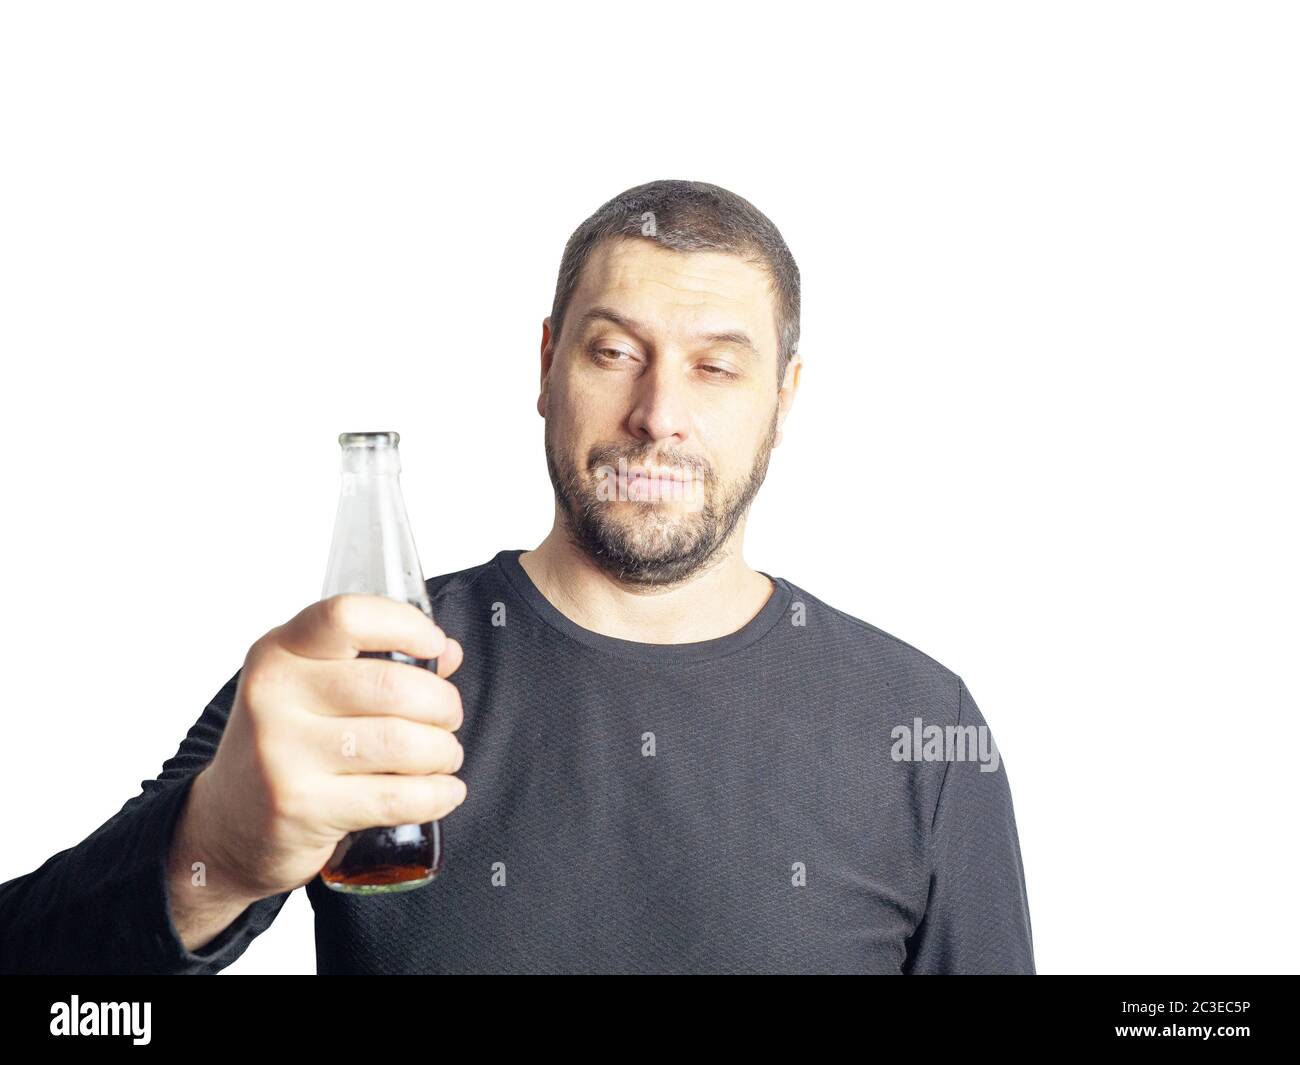 Ein dunkelhaariger Mann mit einem Bart in schwarzer Kleidung hält eine Flasche mit einem Getränk Stockfoto